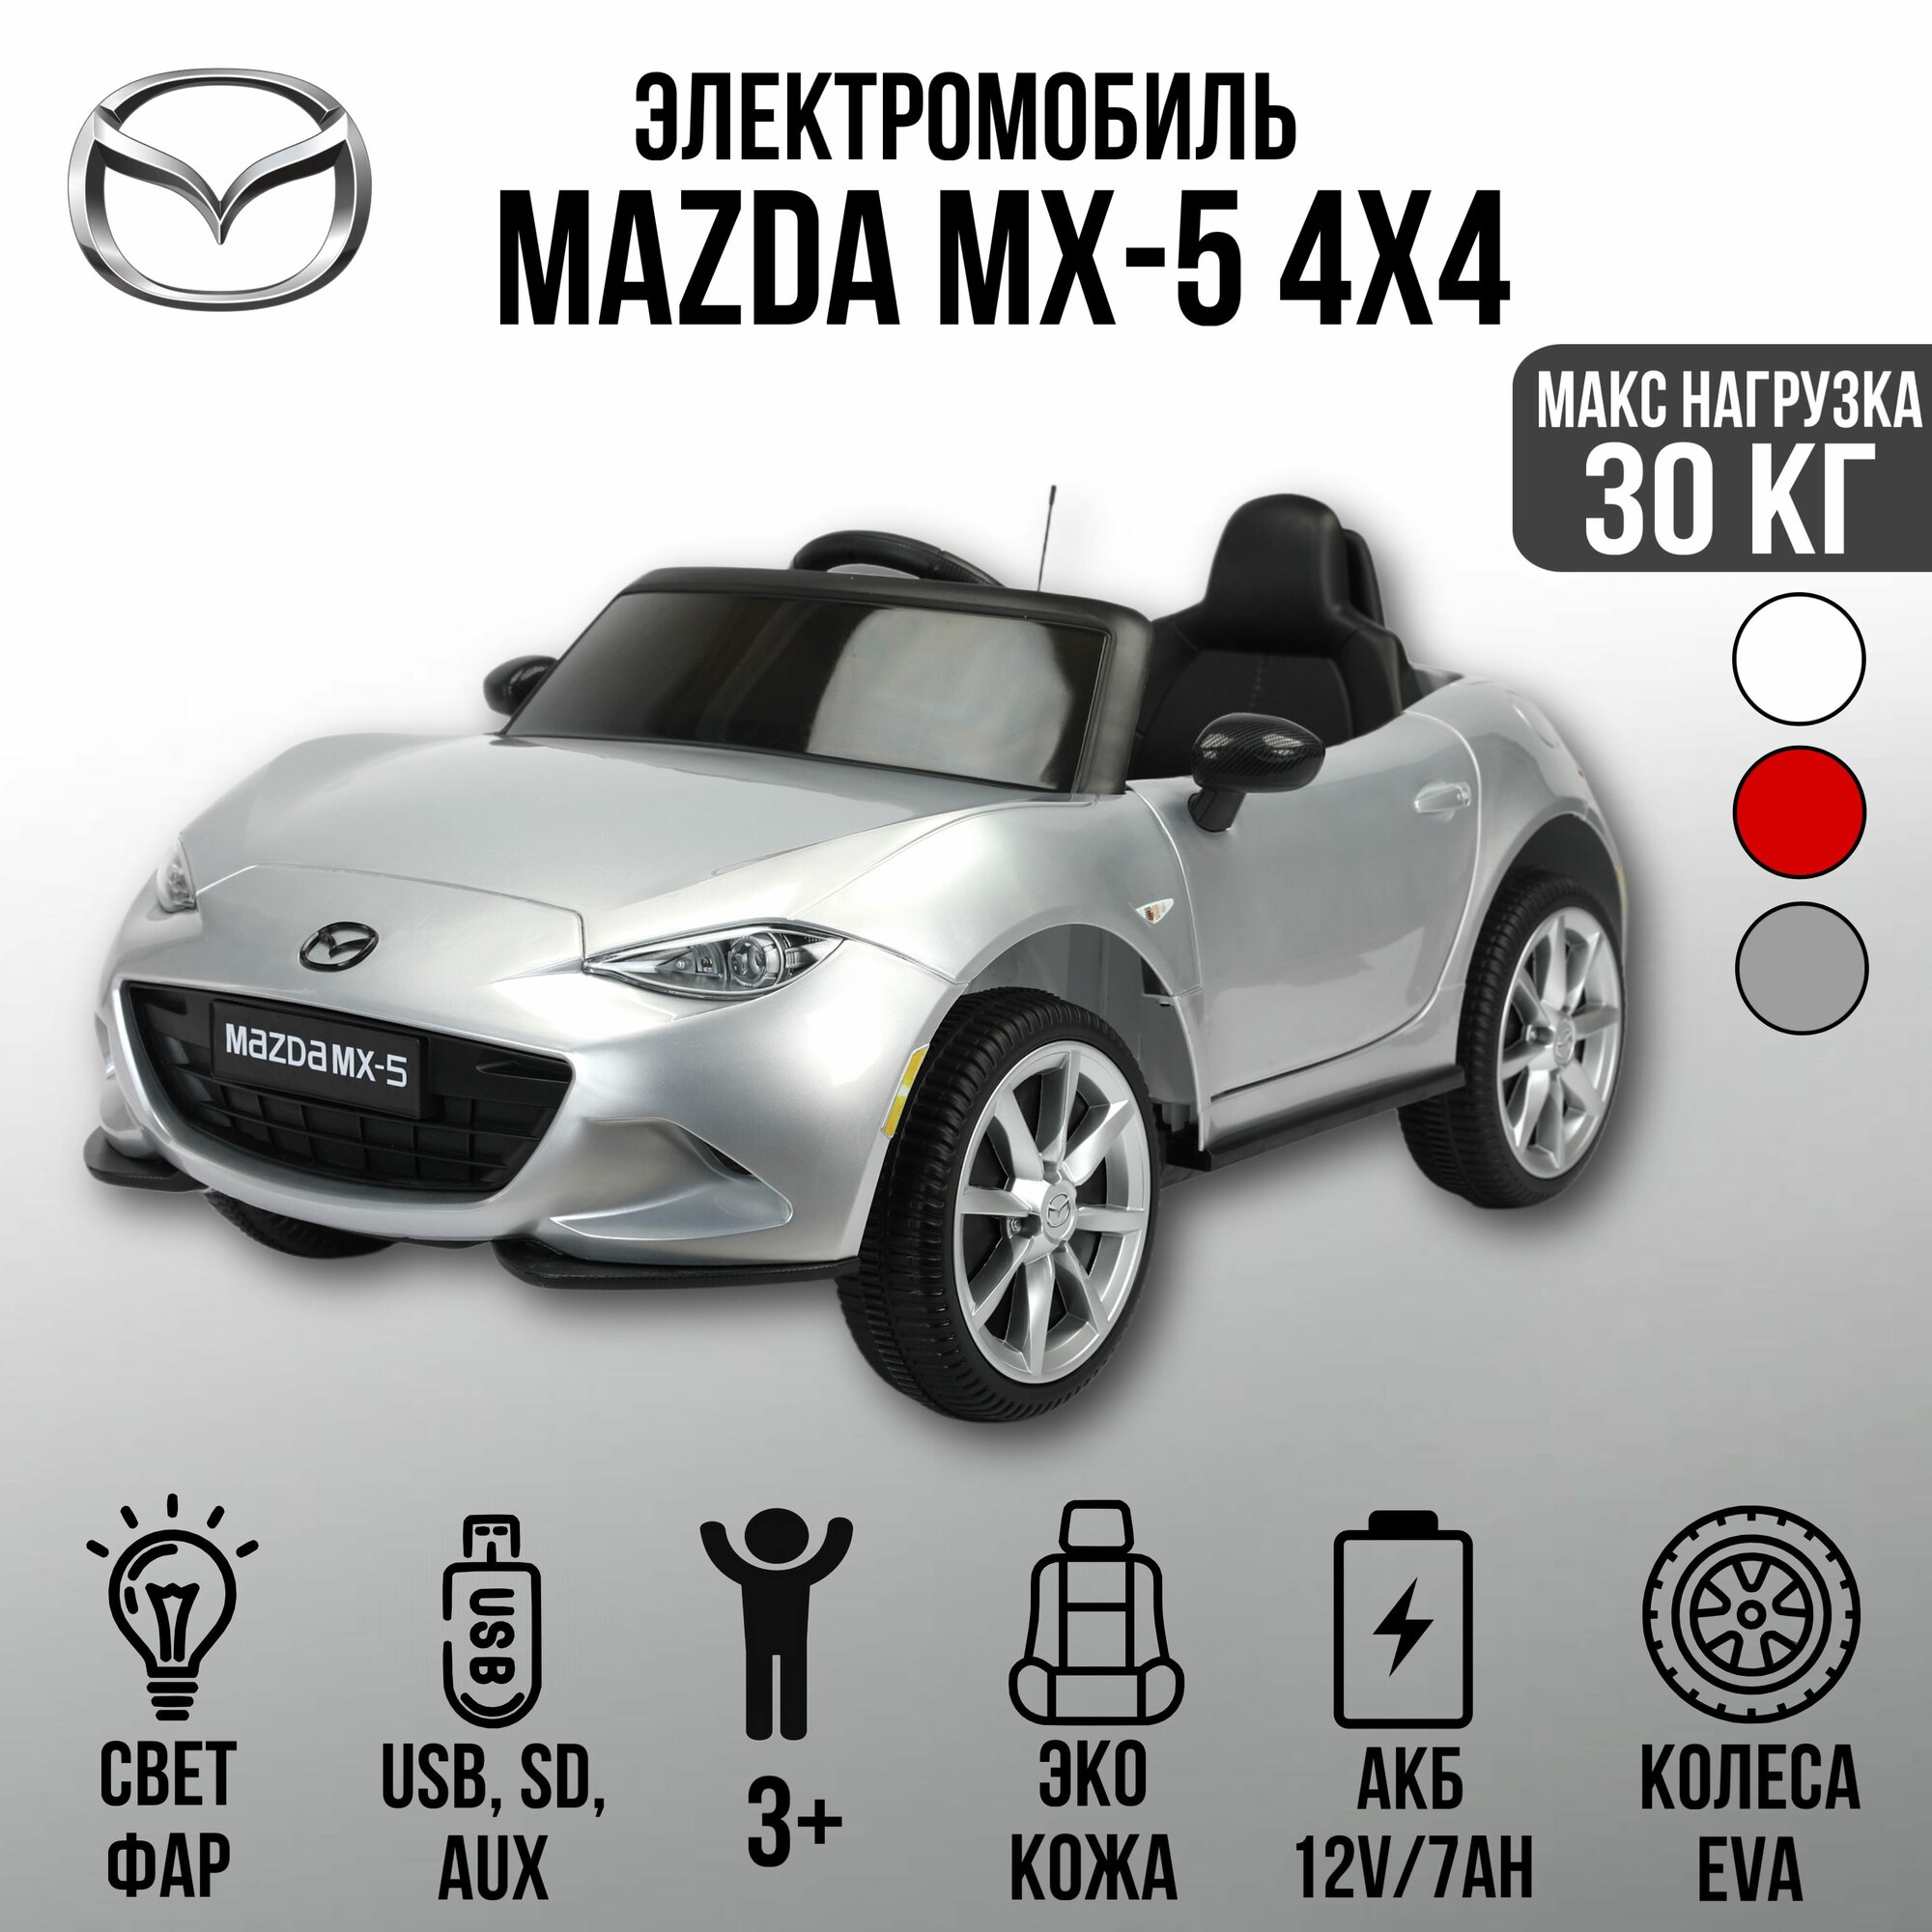 Автомобиль Mazda MX-5